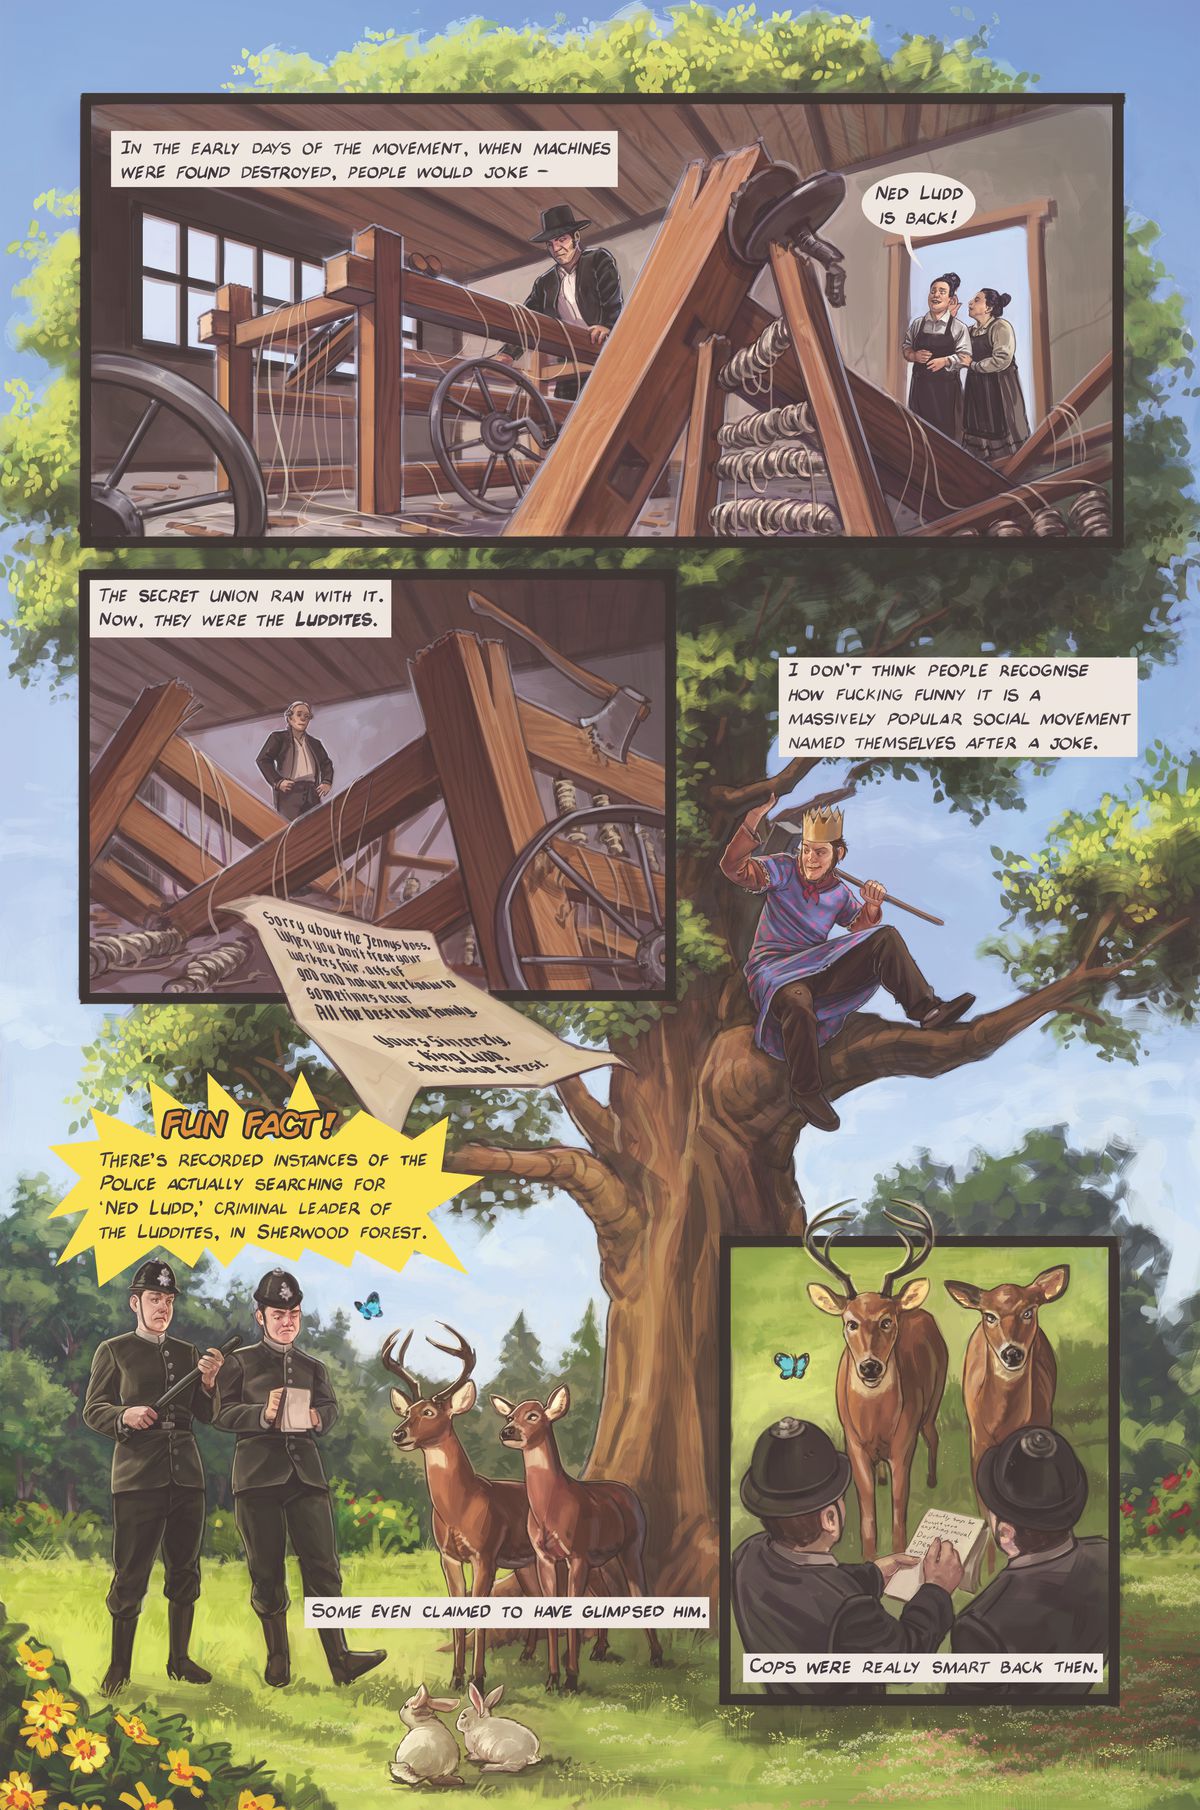 Una pagina a fumetti che descrive come i sindacati hanno adottato la figura folcloristica di Ned Ludd come loro leader per evitare la cattura.